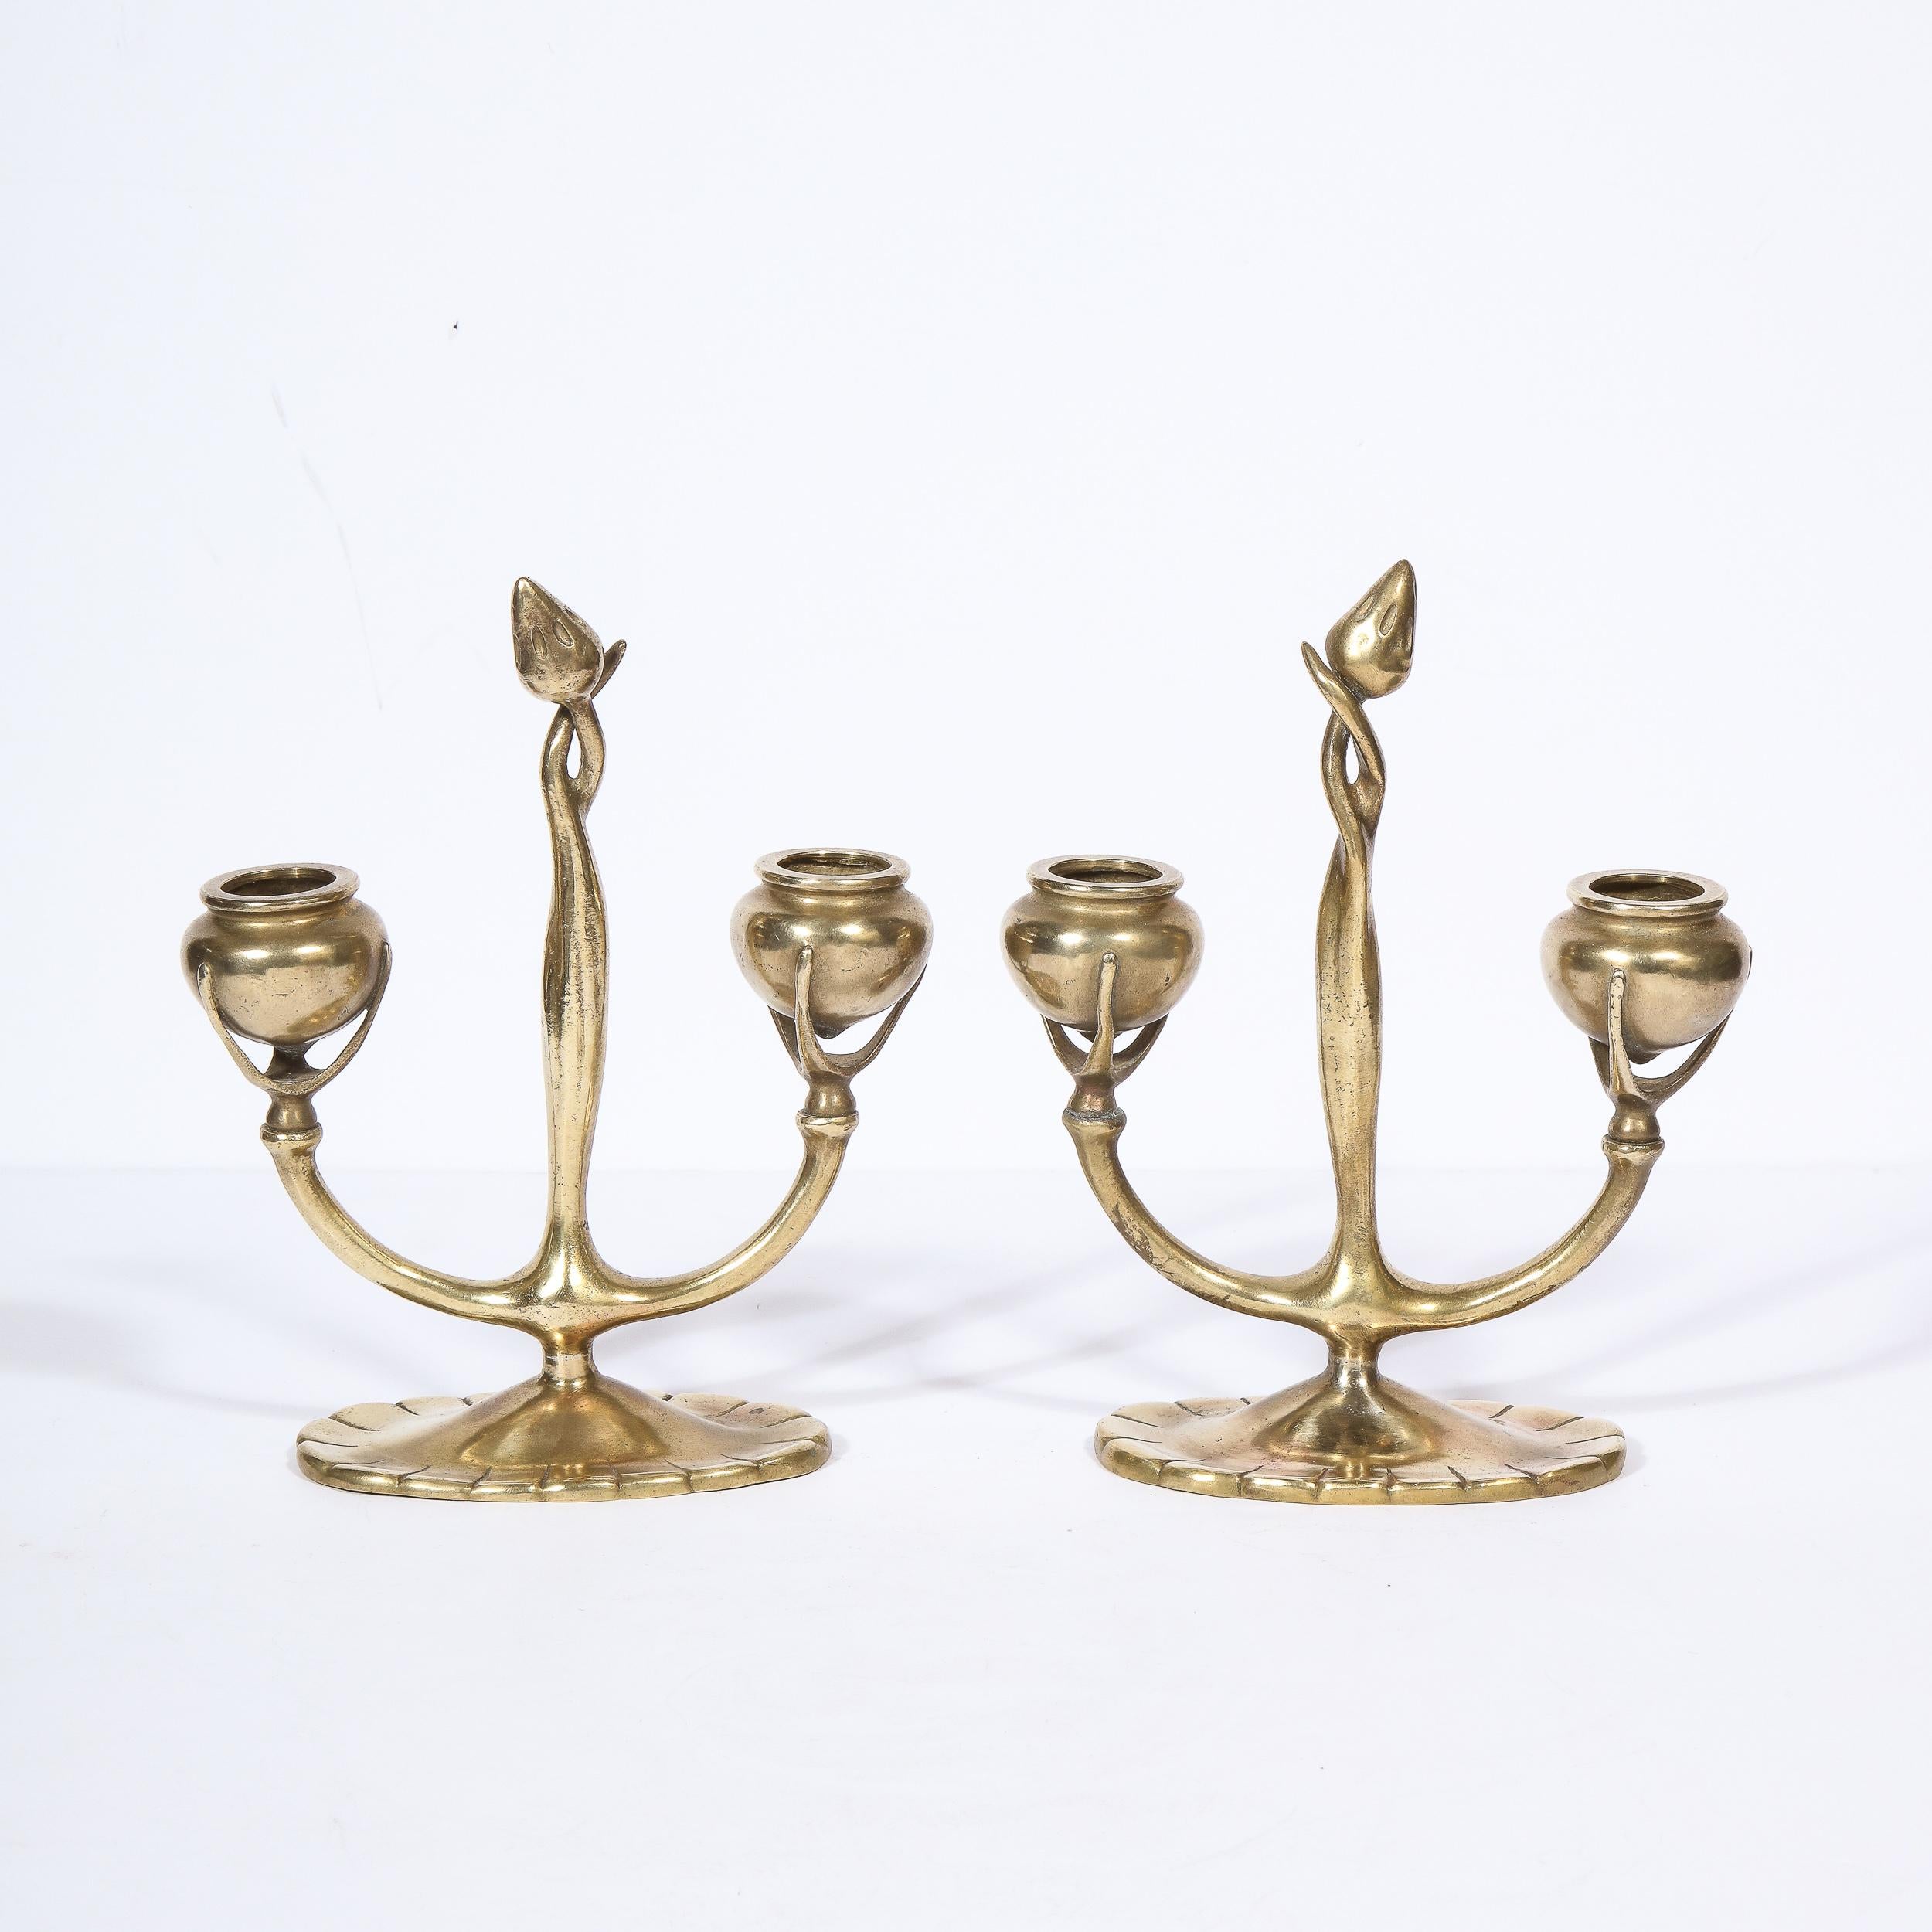 Cette étonnante paire de candélabres Art nouveau en bronze a été réalisée aux États-Unis vers 1910 par les studios Tiffany, l'une des plus belles entreprises américaines de produits de luxe depuis 1837. Elles présentent des formes graphiques et